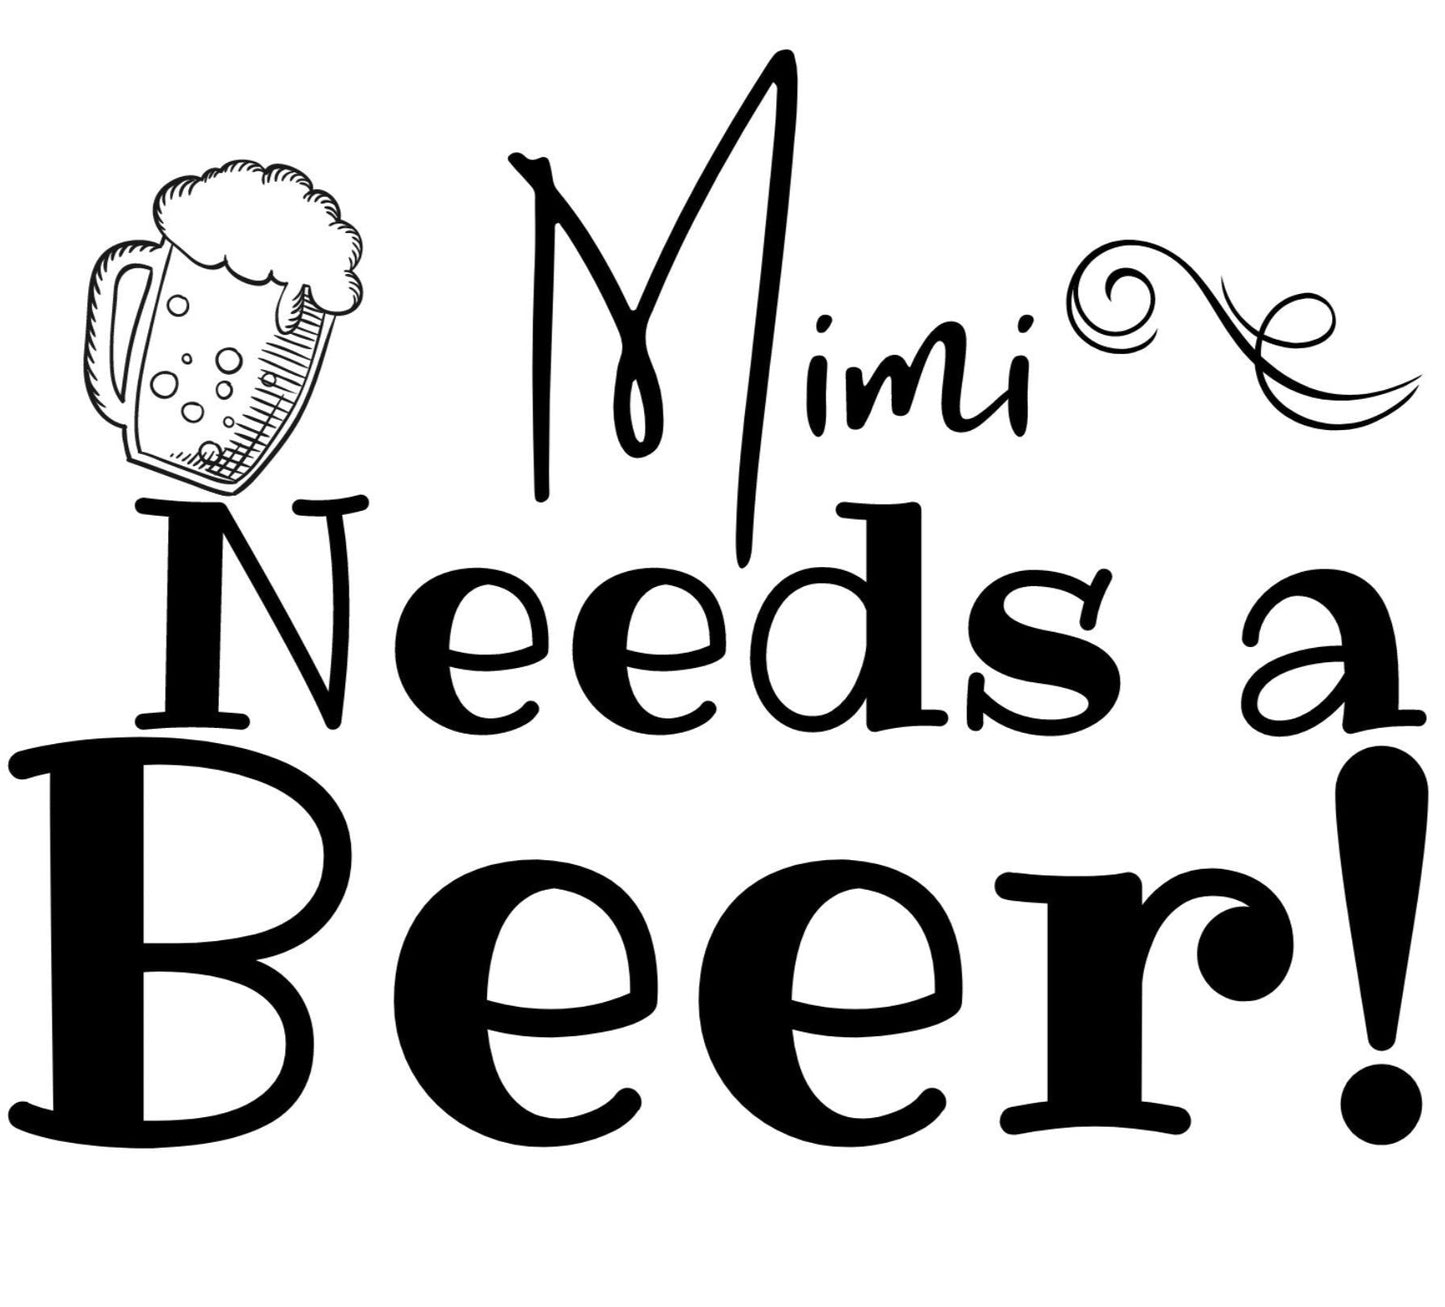 Mimi Needs a Beer